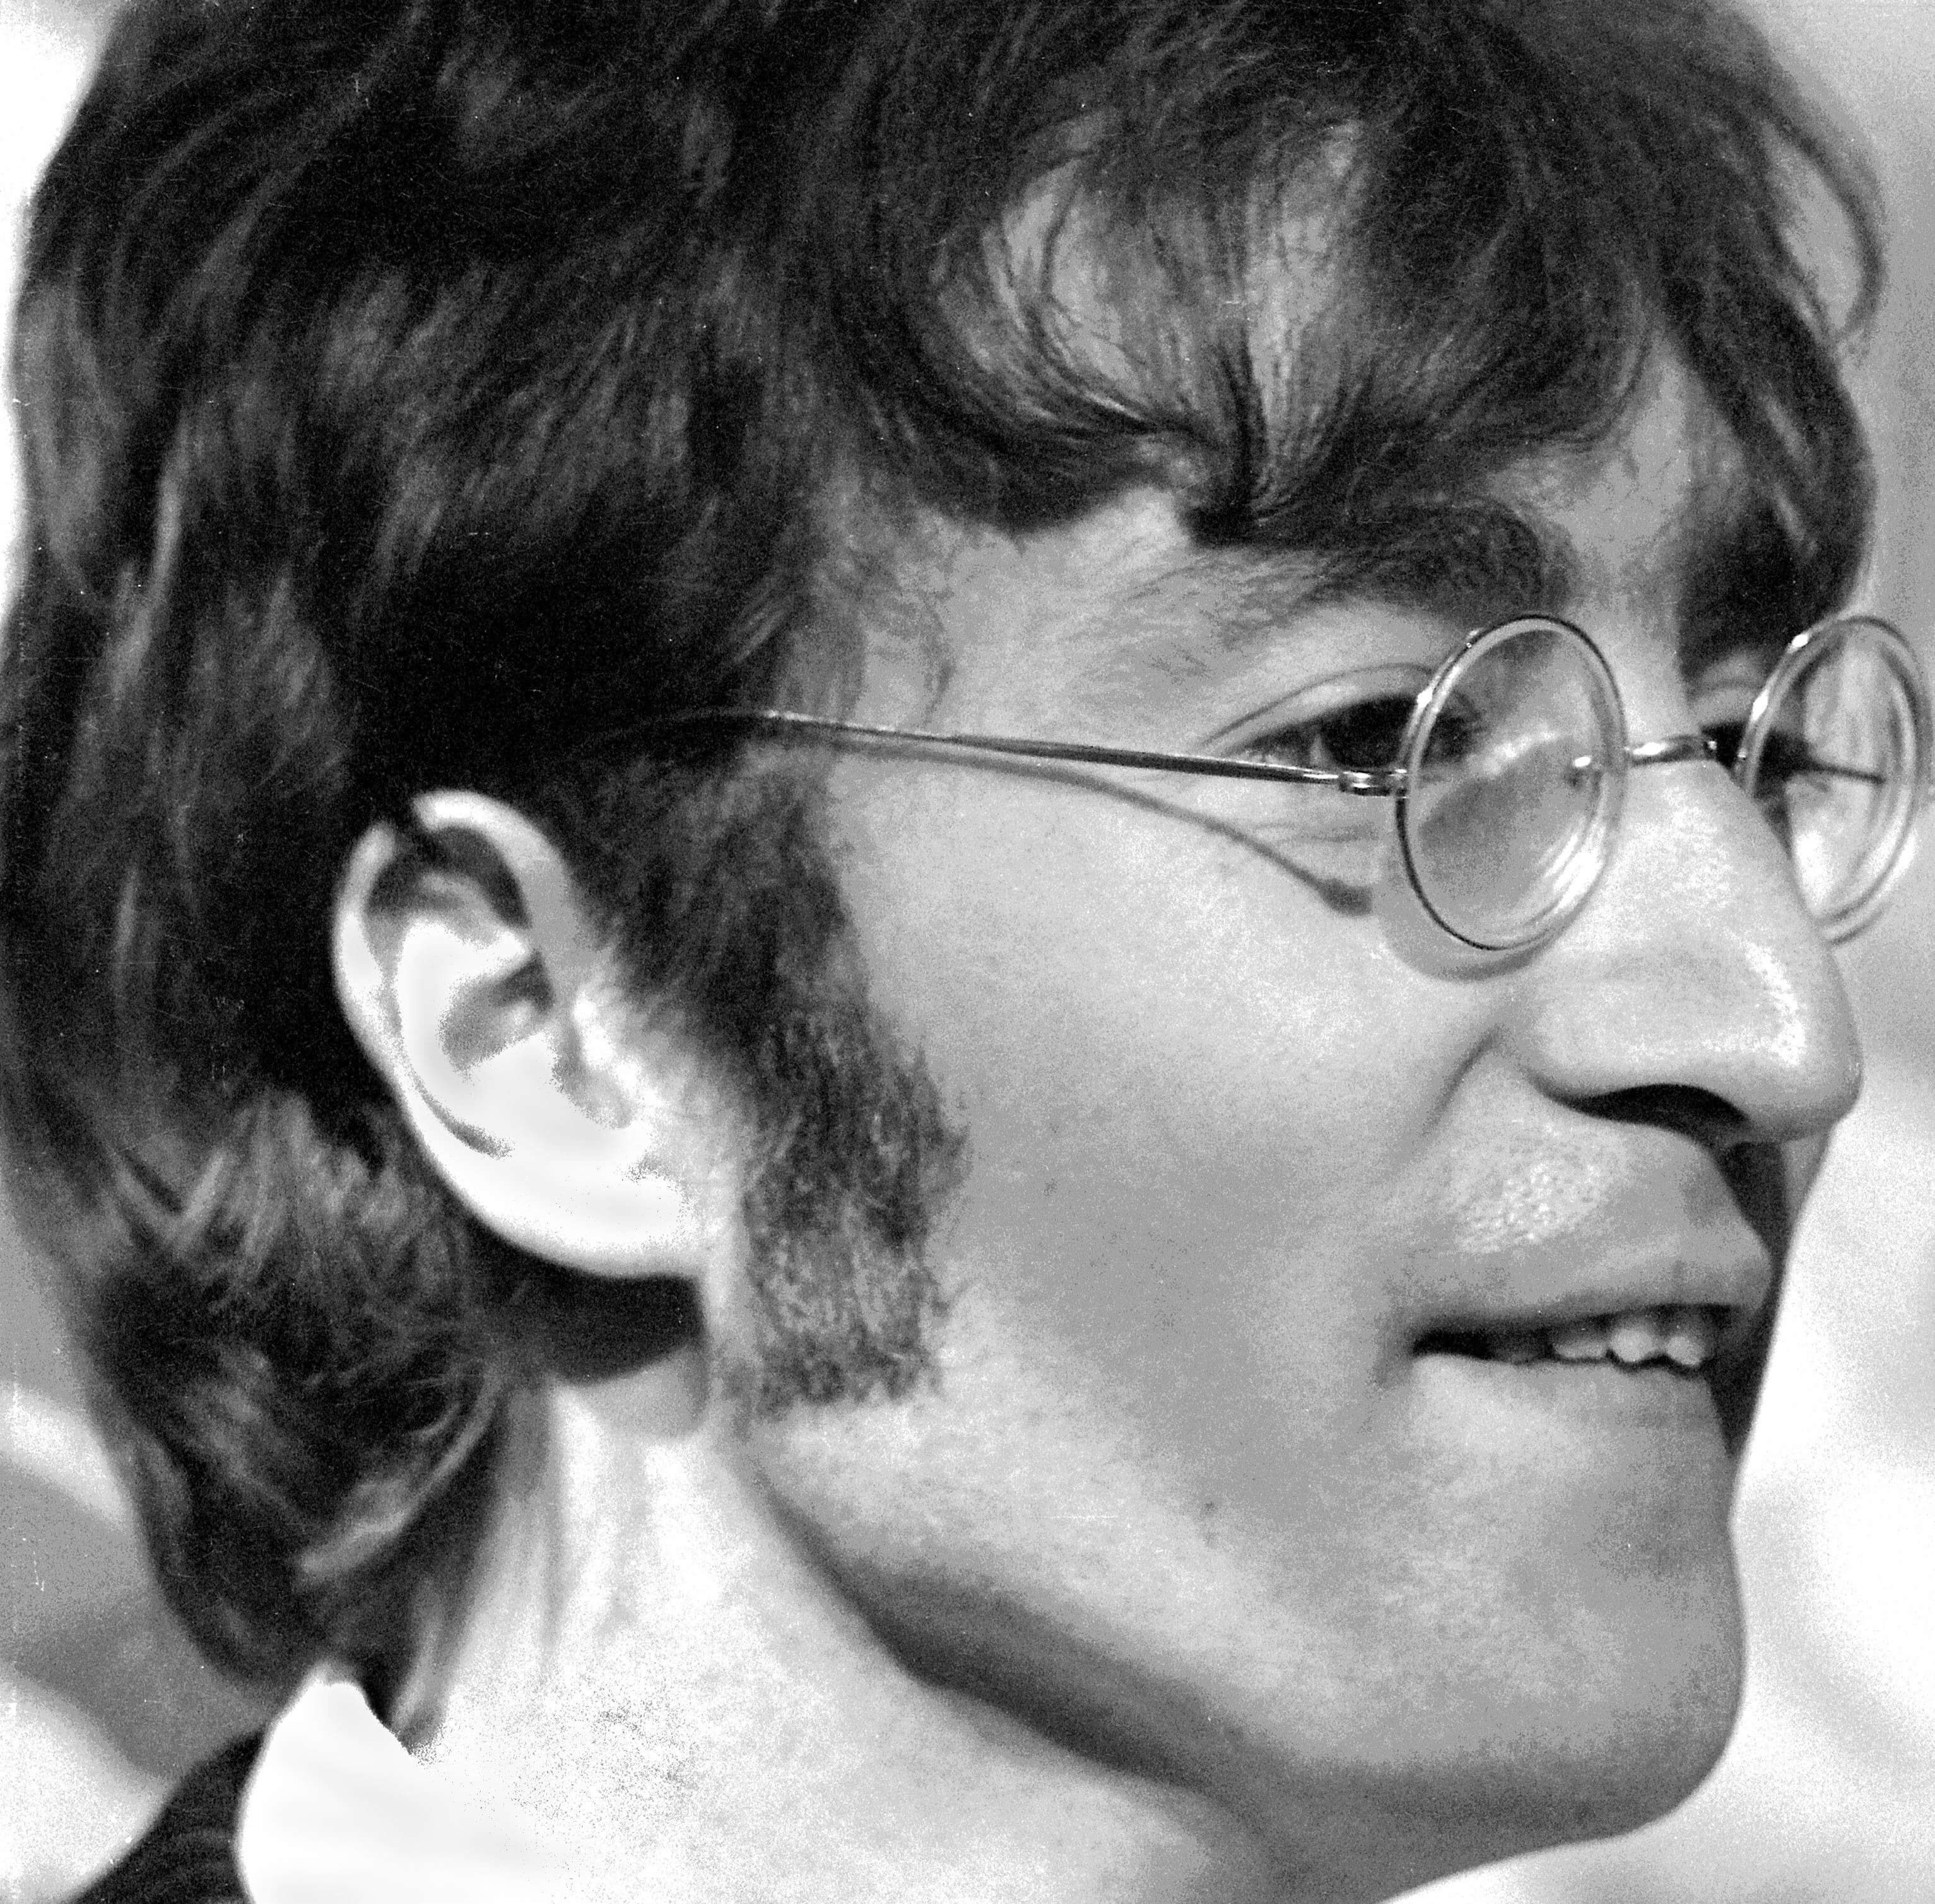 The Beatles' John Lennon in glasses